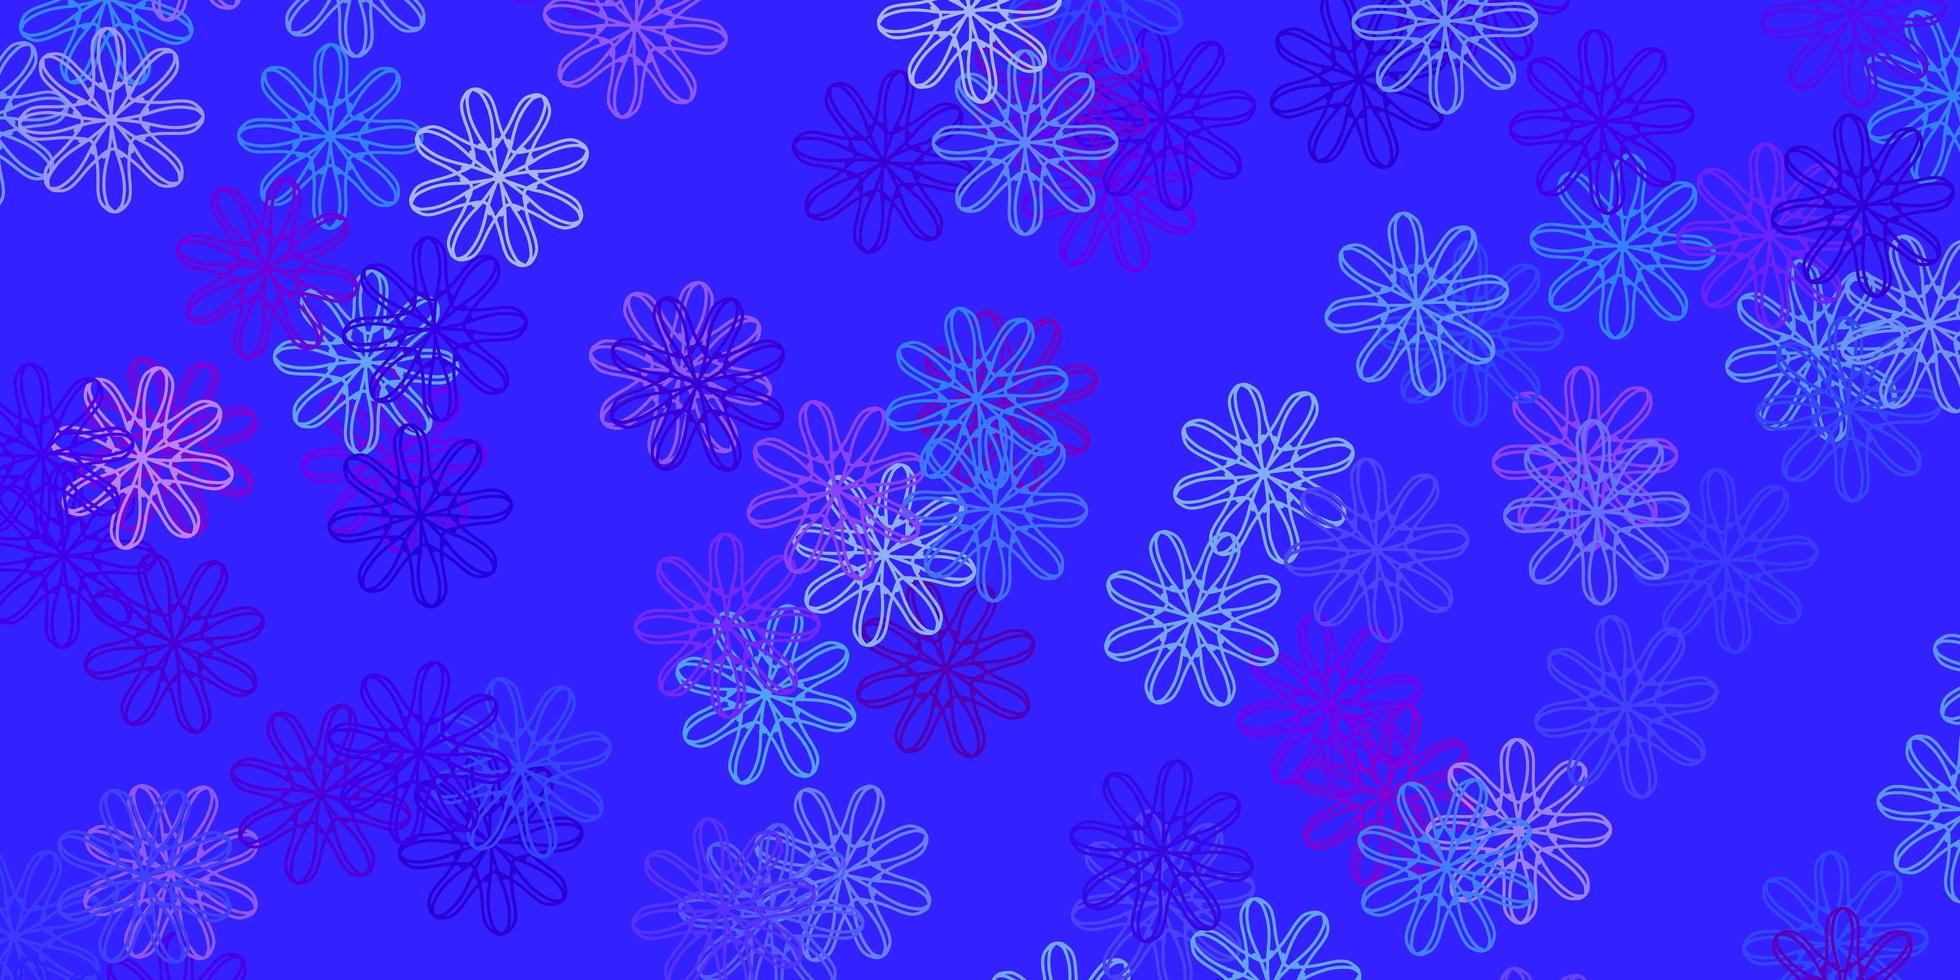 modèle de doodle vecteur bleu clair, rouge avec des fleurs.